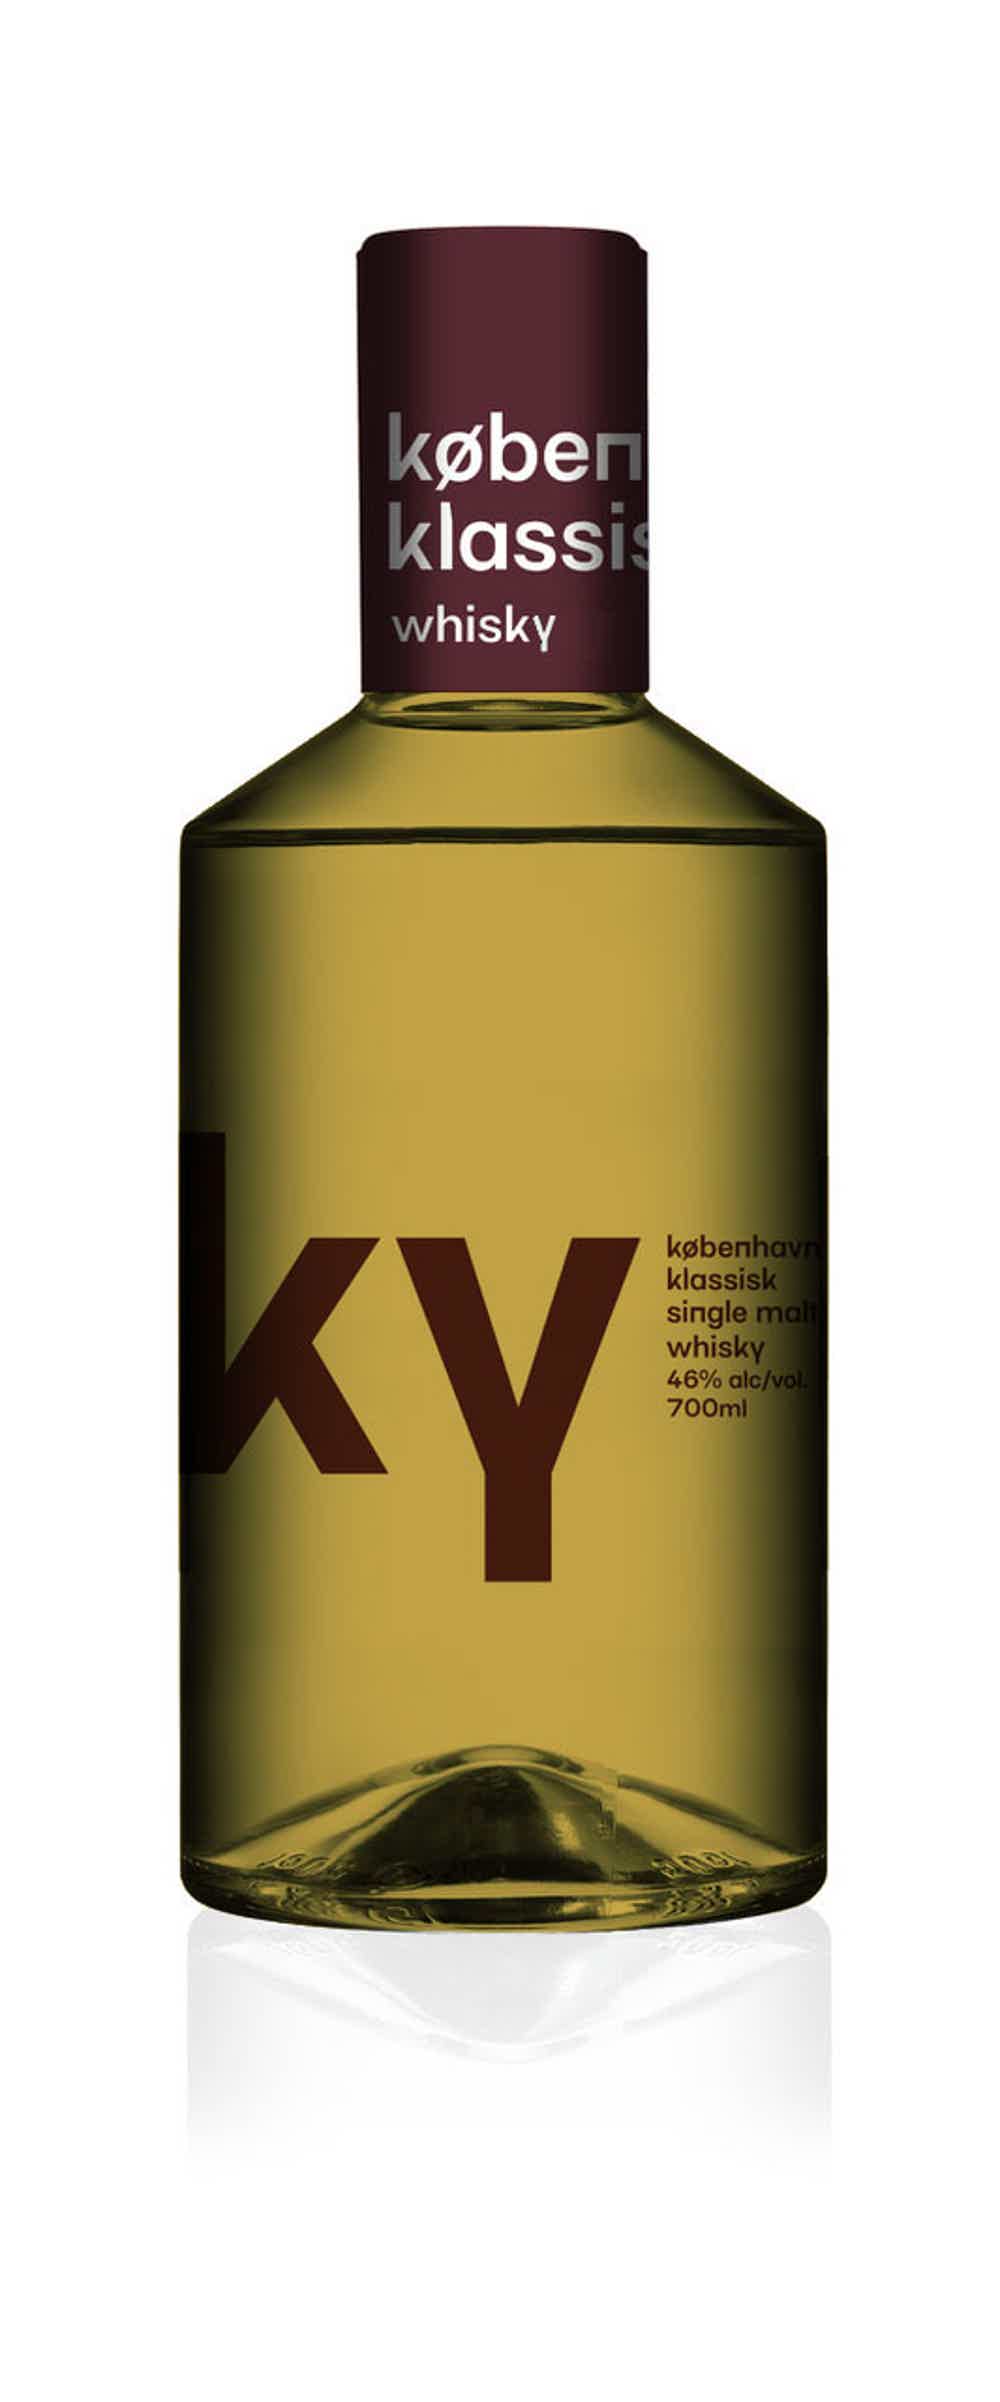 København Klassisk Single Malt Whisky 46.0% 0.7L, Spirits